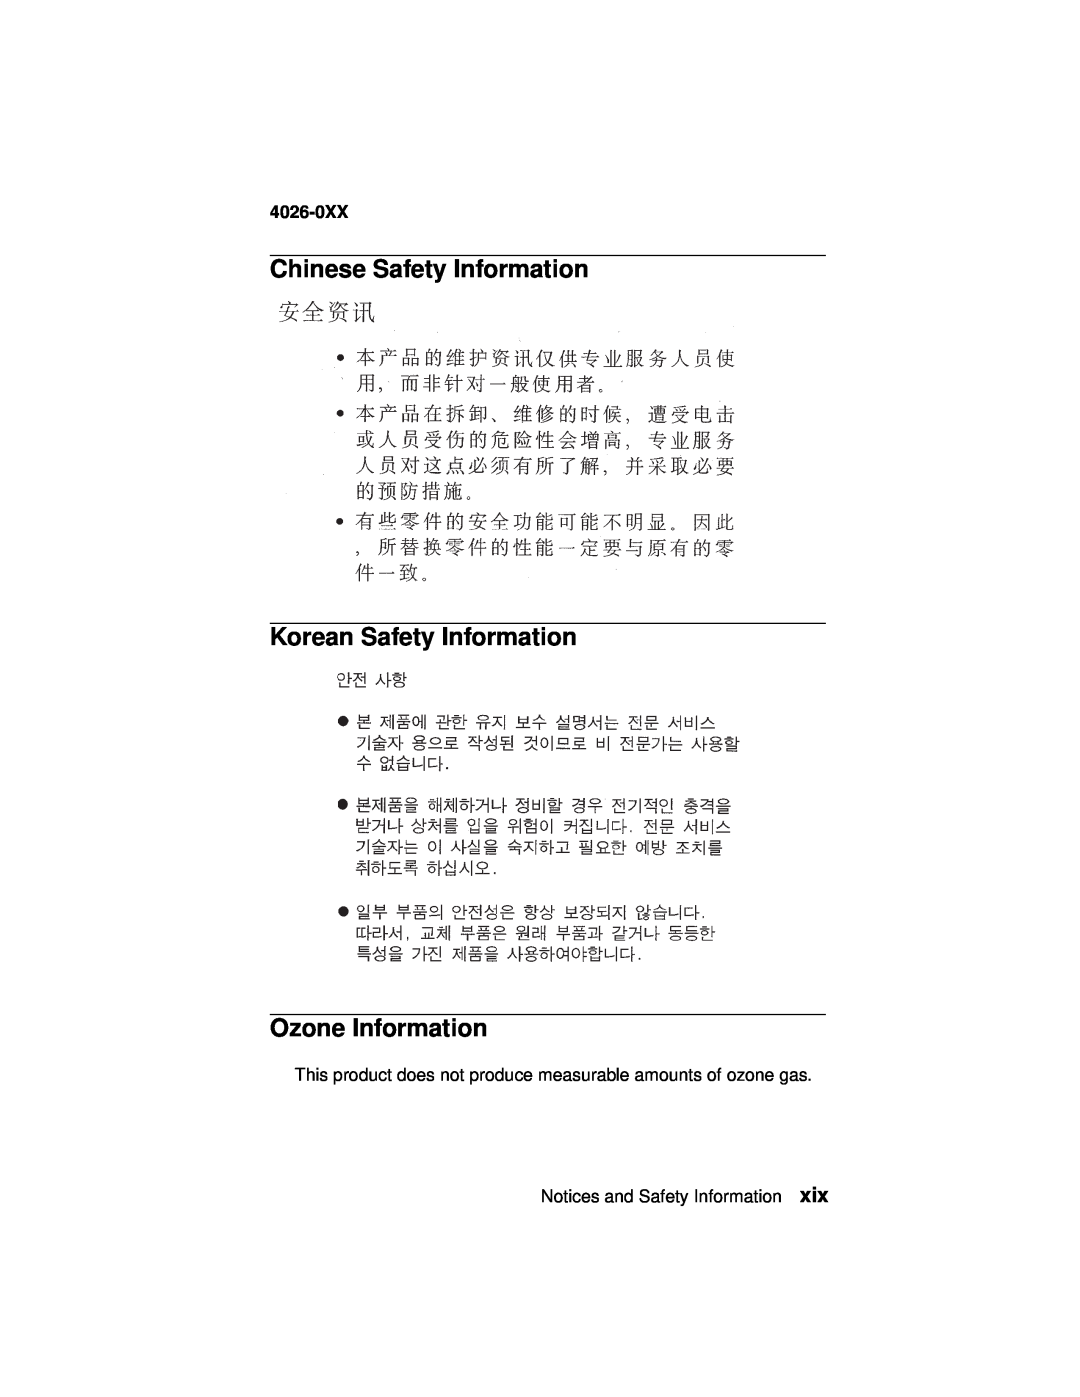 Lexmark 4026-0XX Chinese Safety Information, Korean Safety Information Ozone Information, Notices and Safety Information 